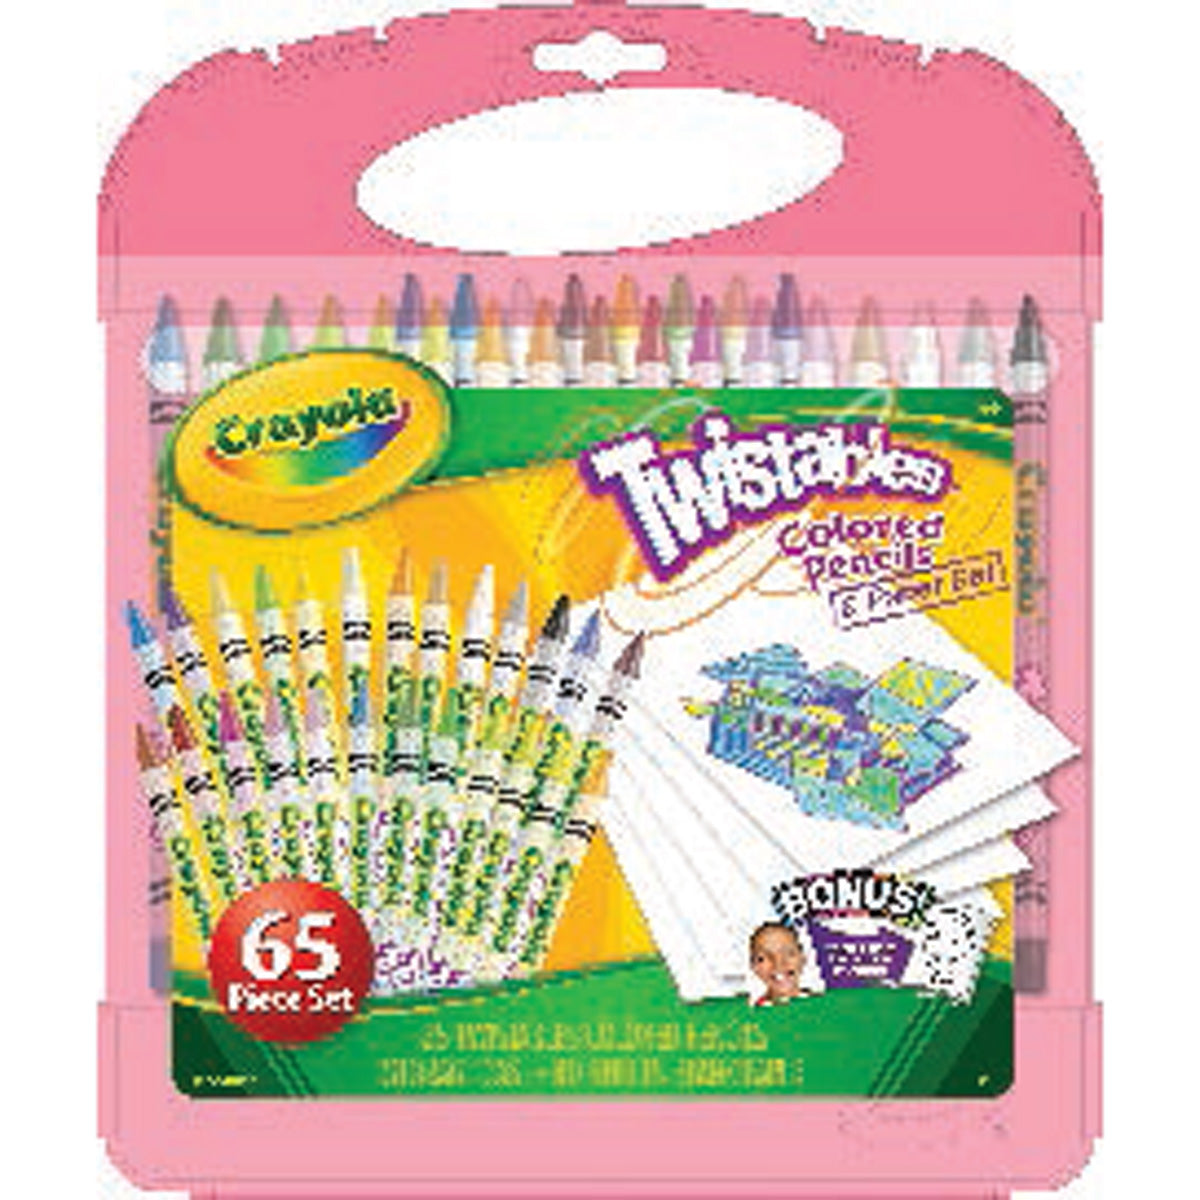 Crayola Twistables Colored Pencils & Paper